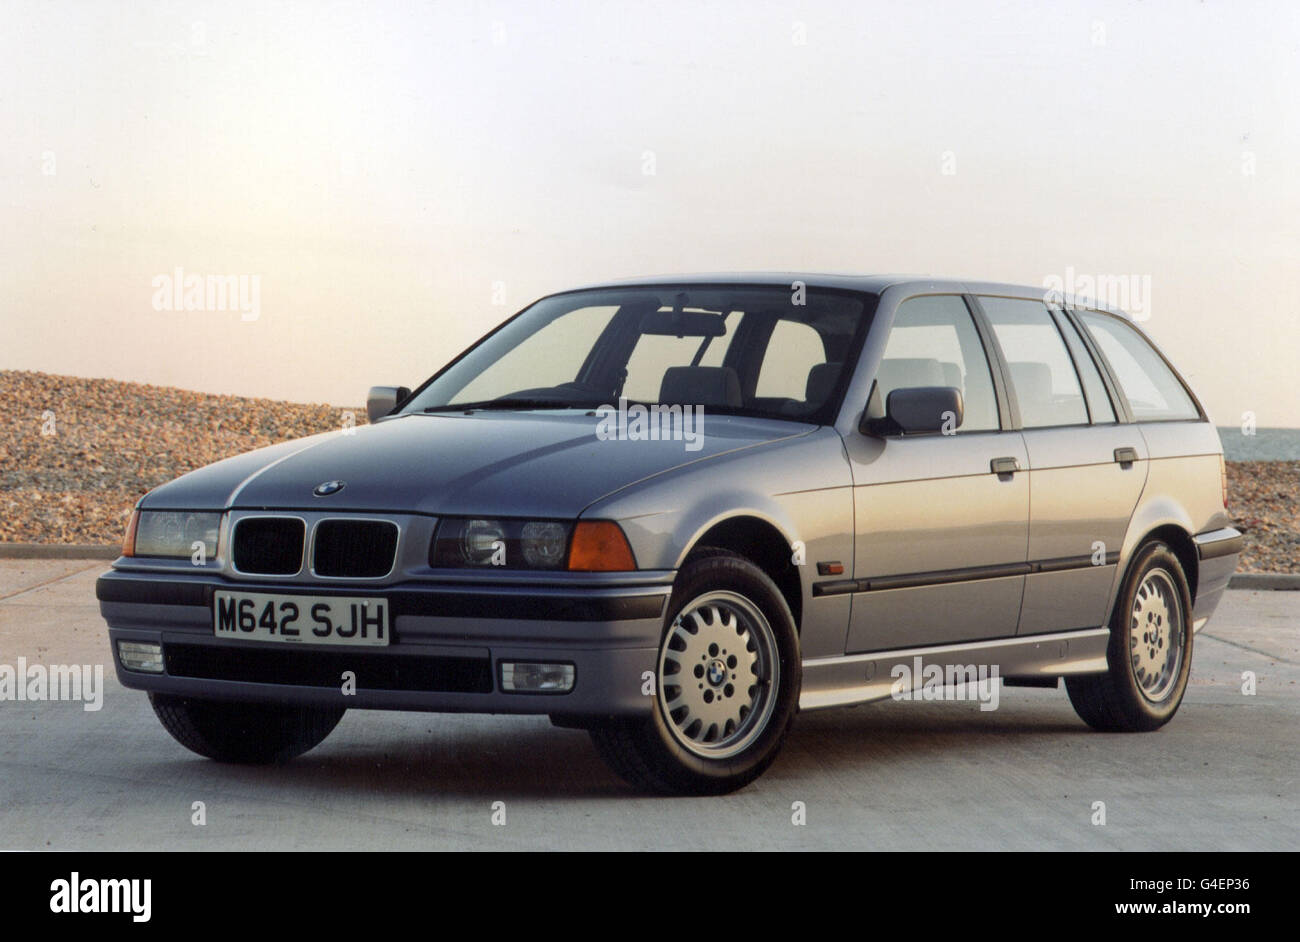 RITIRO BMW TRASPORTO. Filer non datato. La nuova BMW Serie 3 Touring. Foto Stock